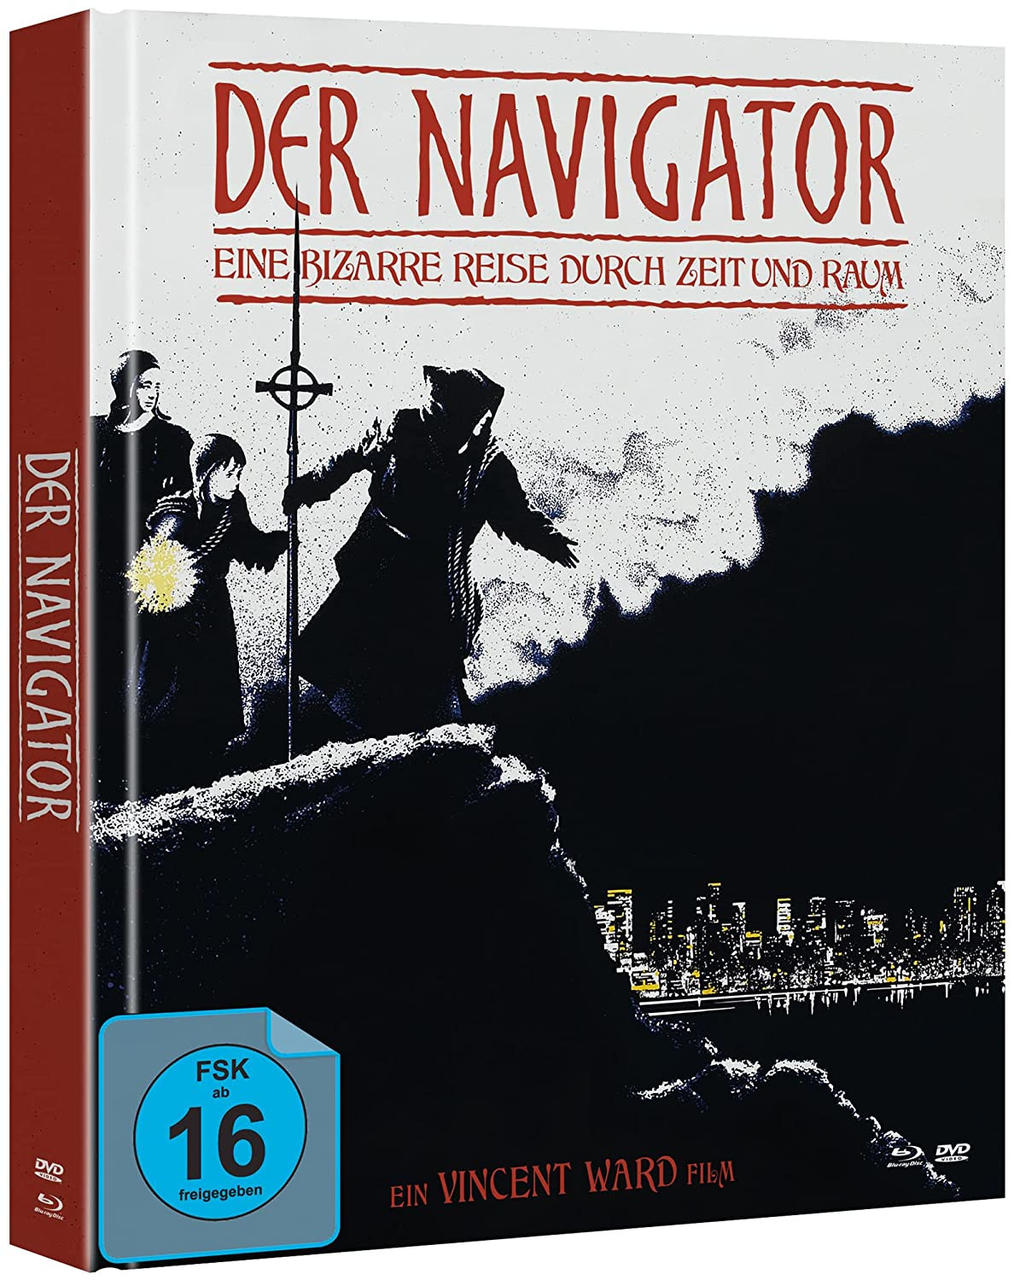 Der Navigator-E.Bizarre D.Zeit + Reise Blu-ray U.Raum DVD